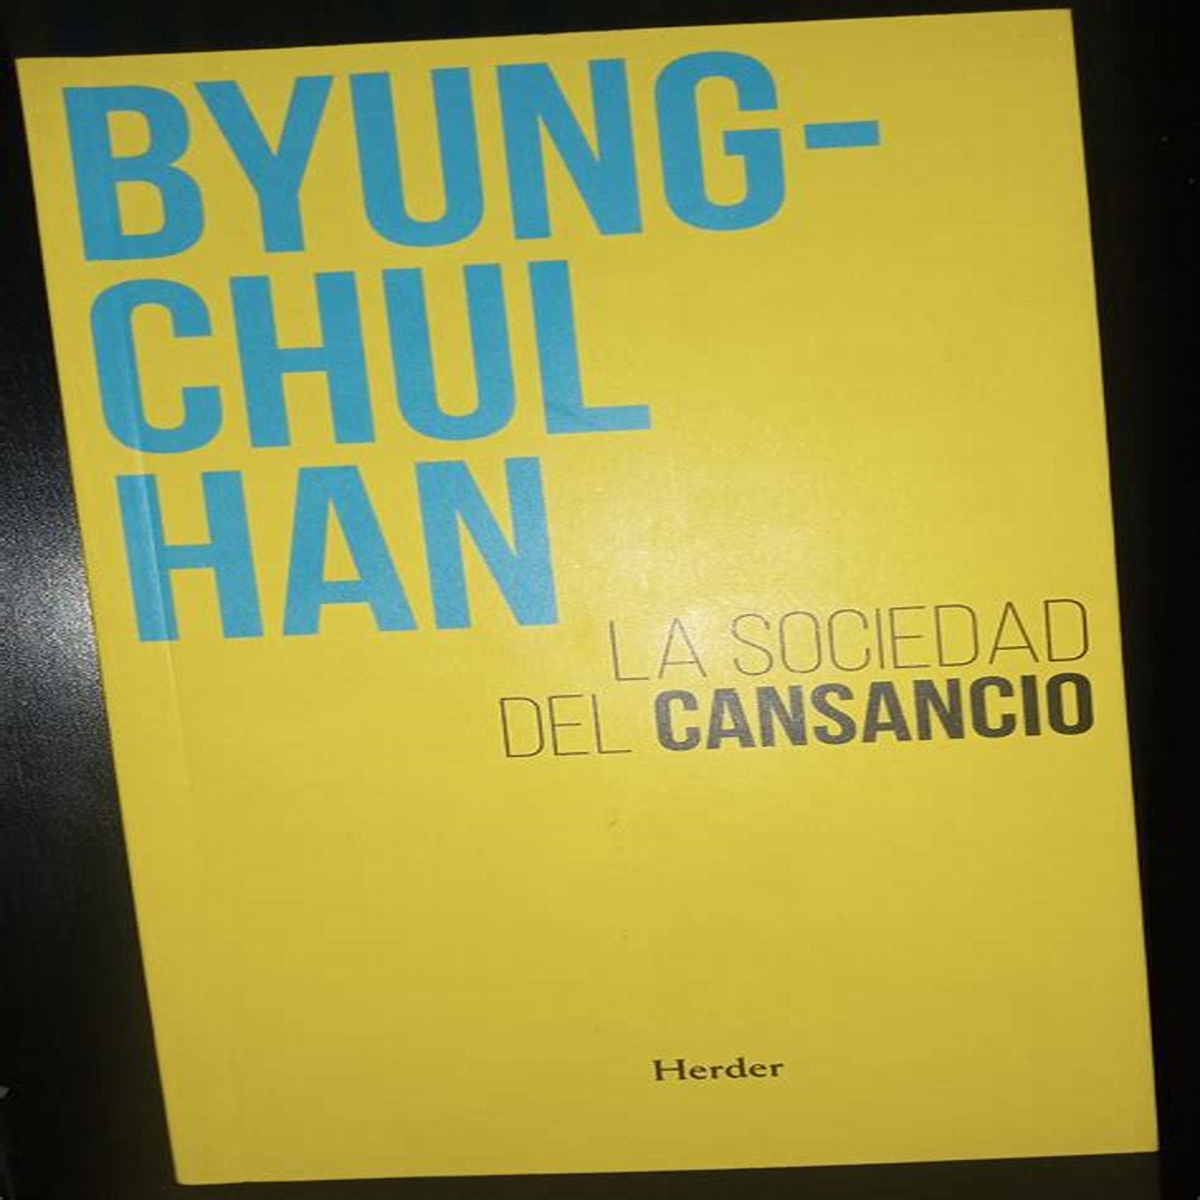 2024 La sociedad del cansancio, de Byung Chul Han.